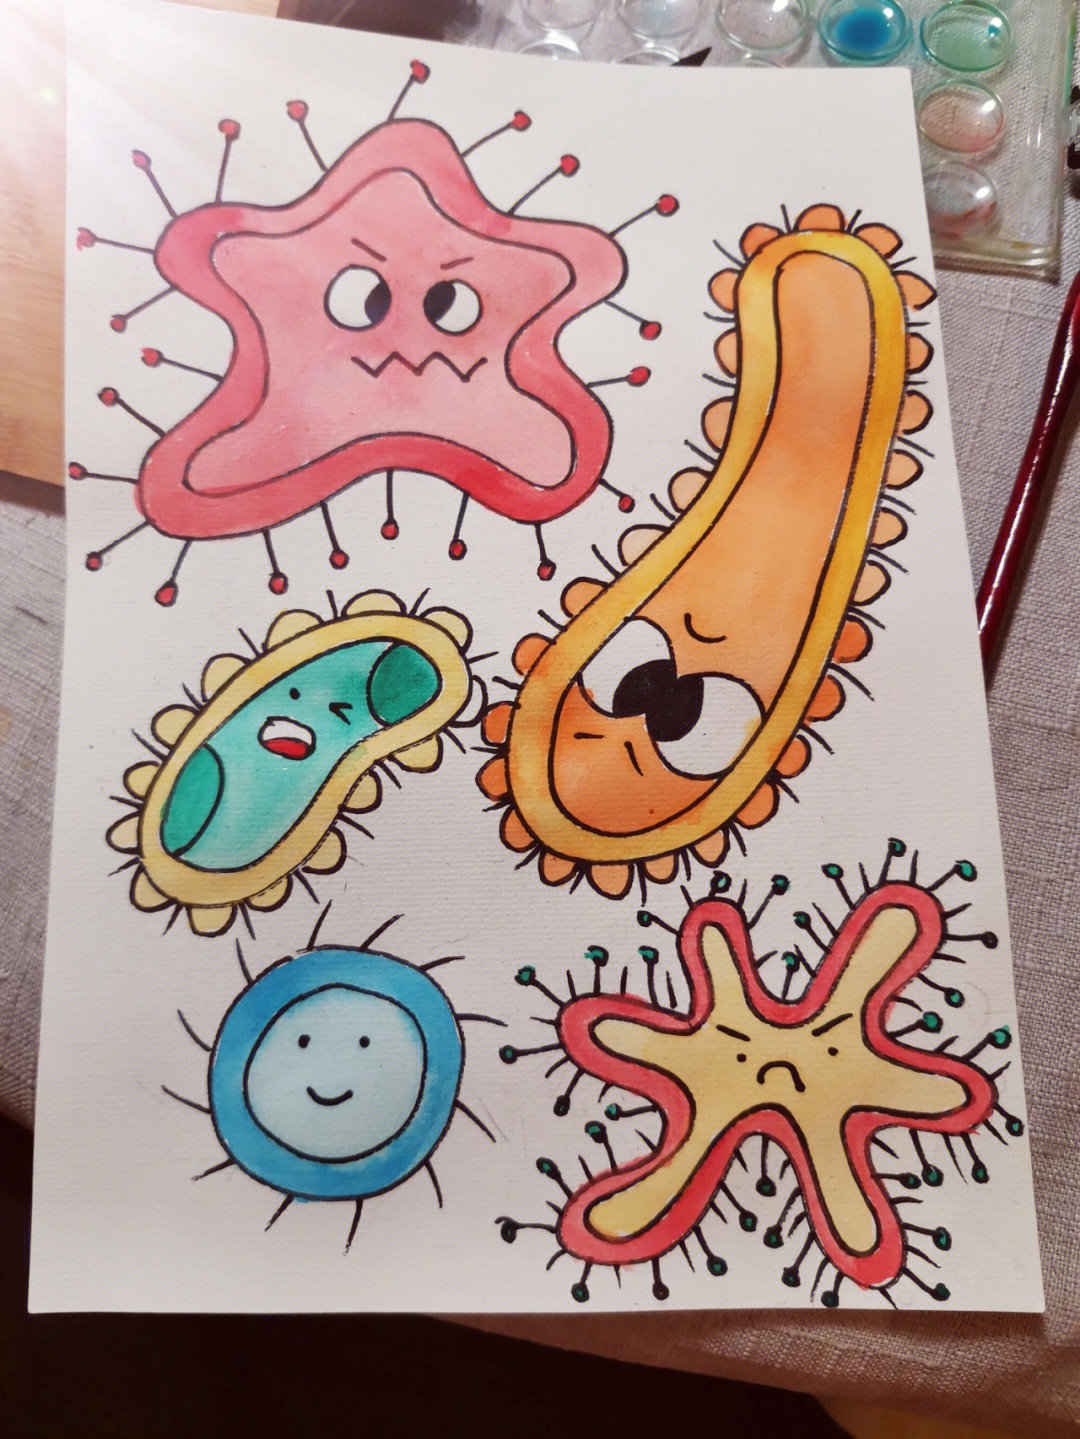 病菌简笔画图片带色彩图片